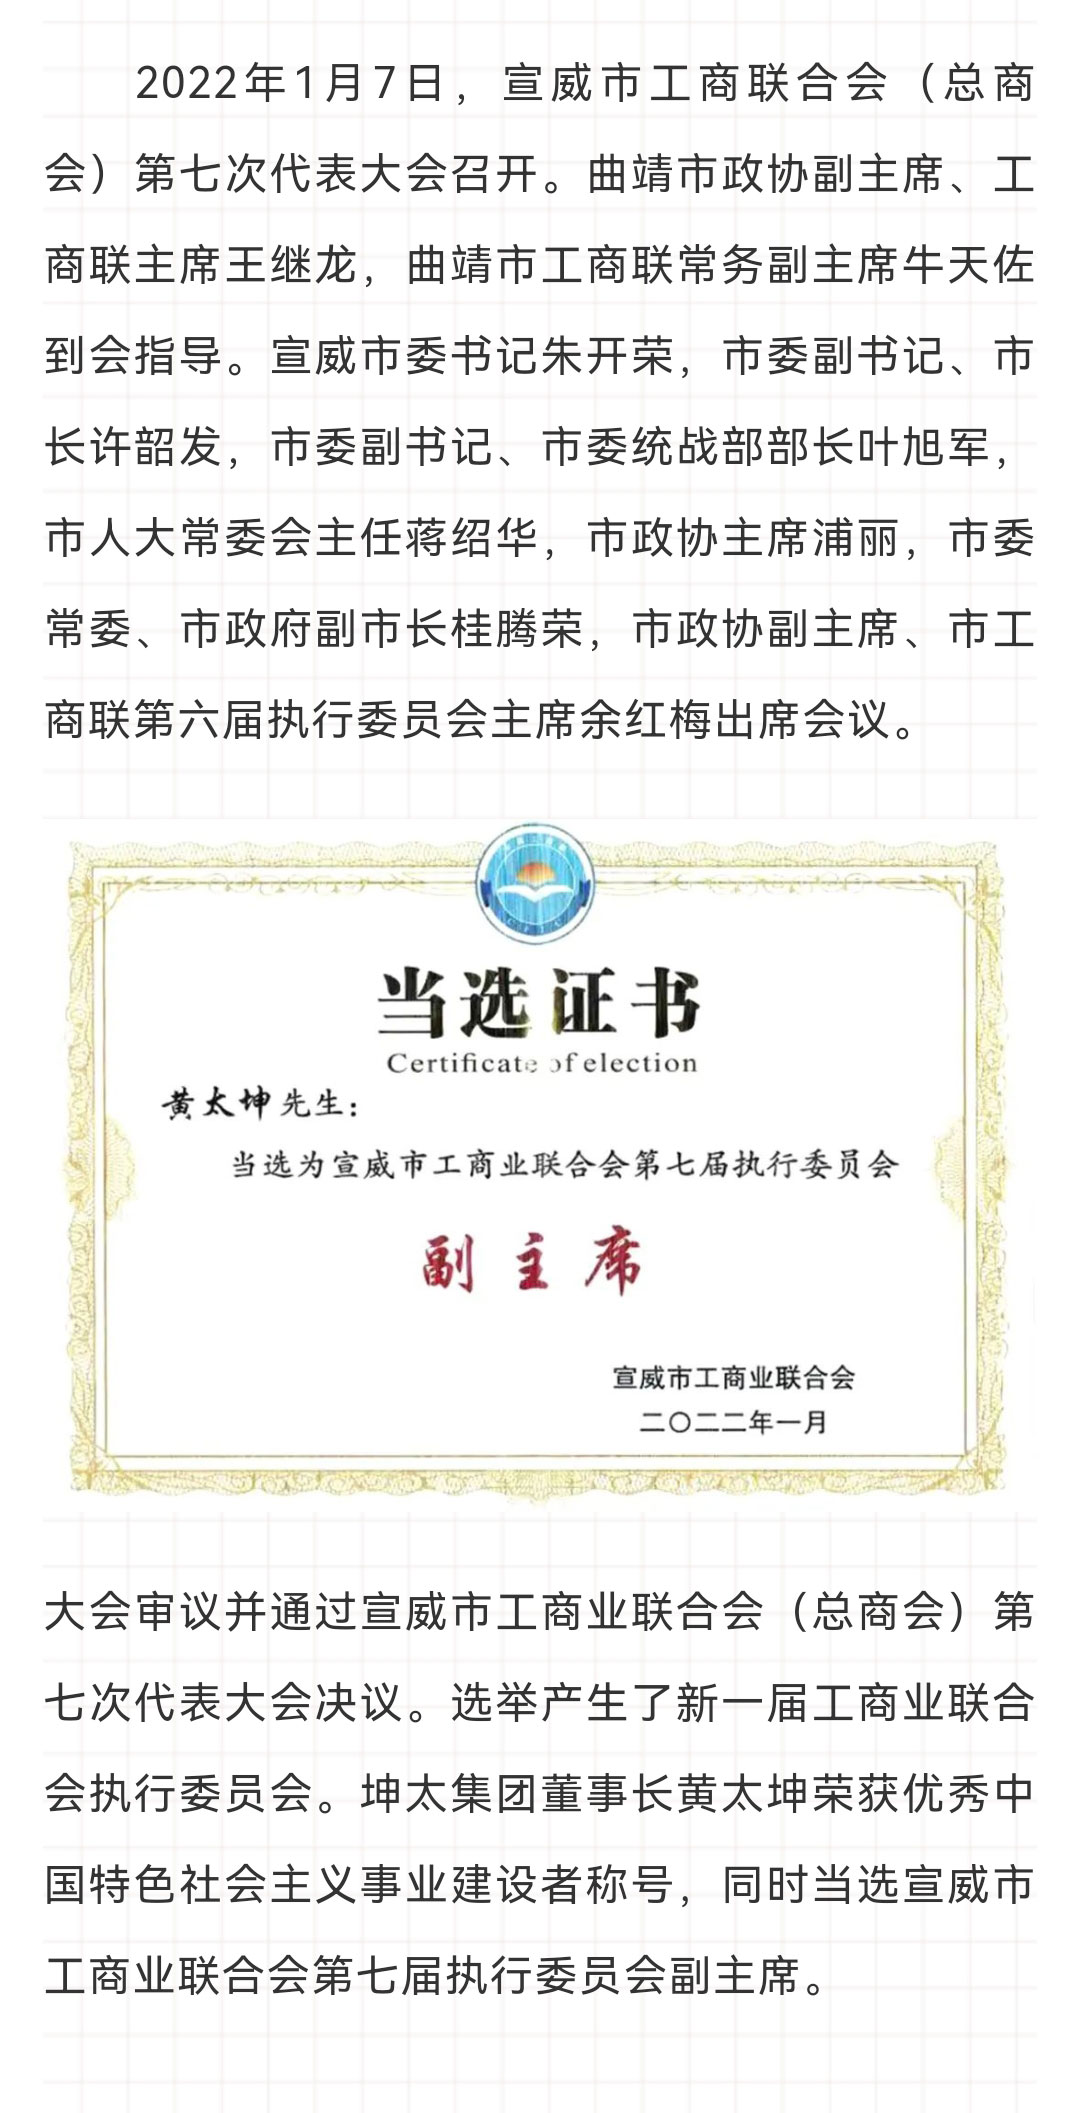 黄太坤荣获优秀中国特色社会主义事业建设者称号_01.jpg